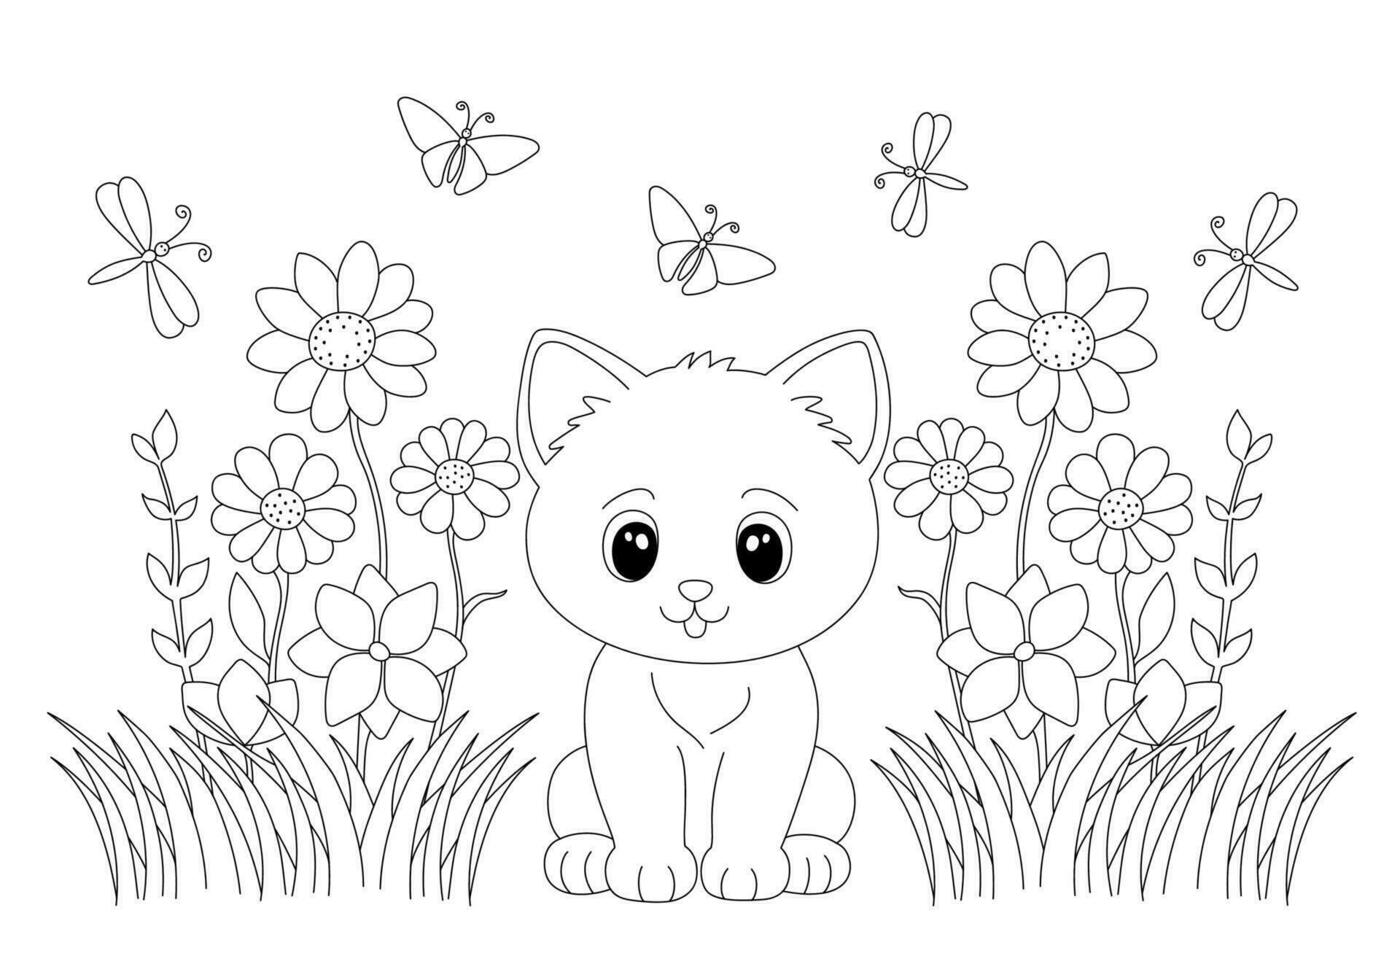 colorante página con adorable gatito en césped y flores mano dibujado vector contorneado negro y blanco ilustración.